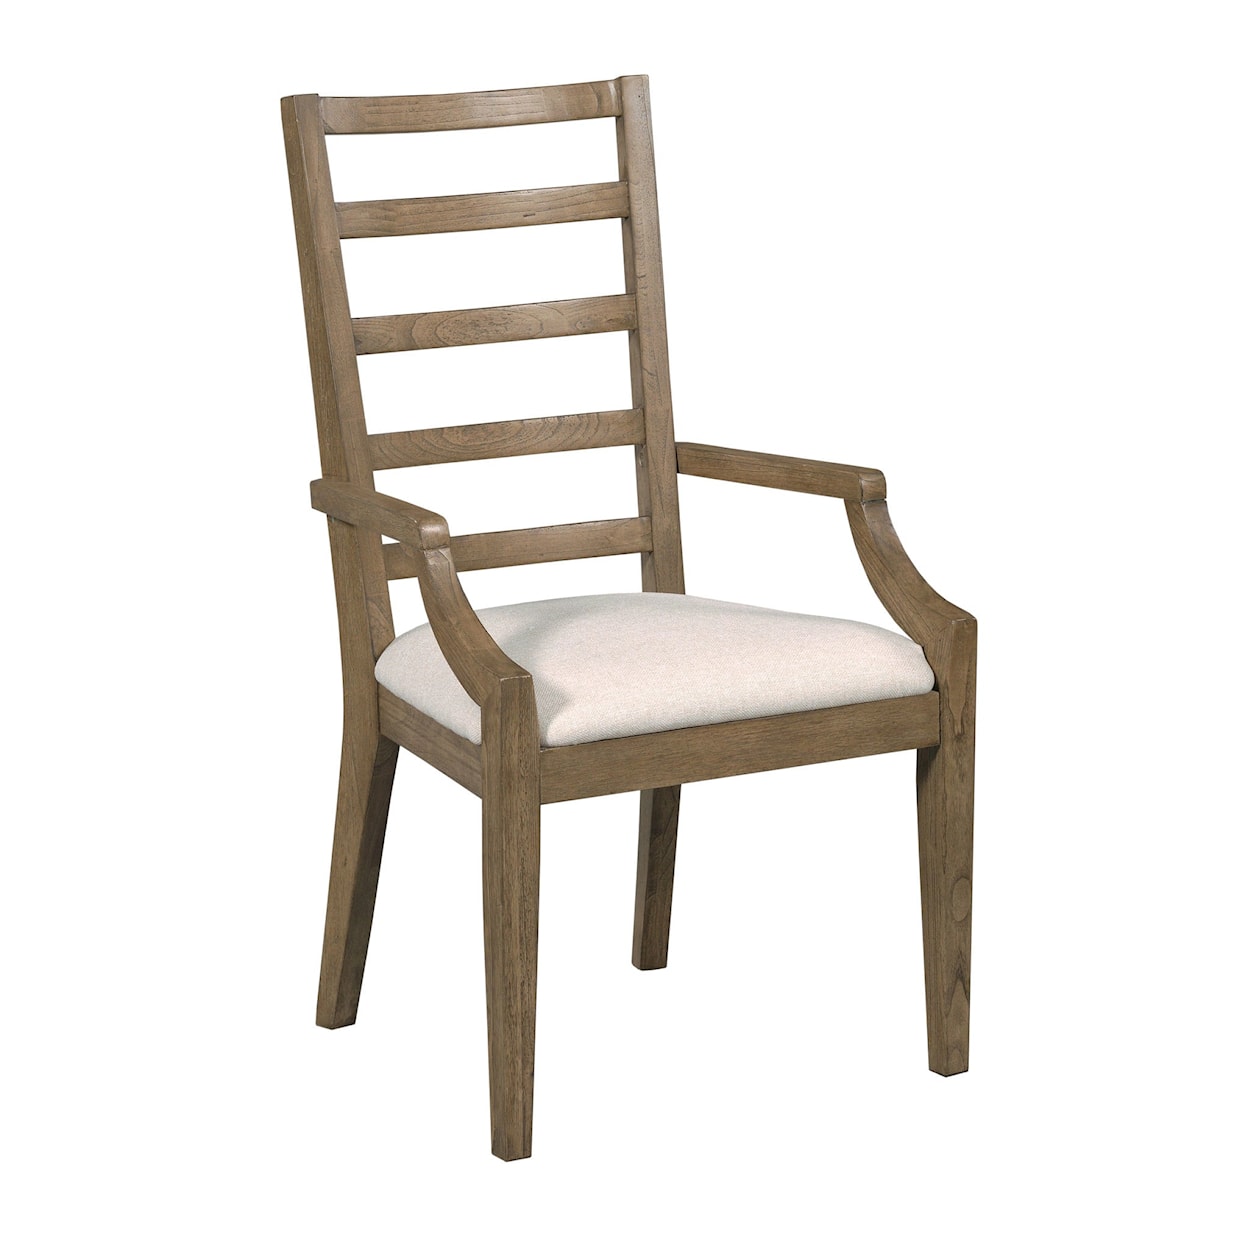 Kincaid Furniture Debut Graham Arm Chair